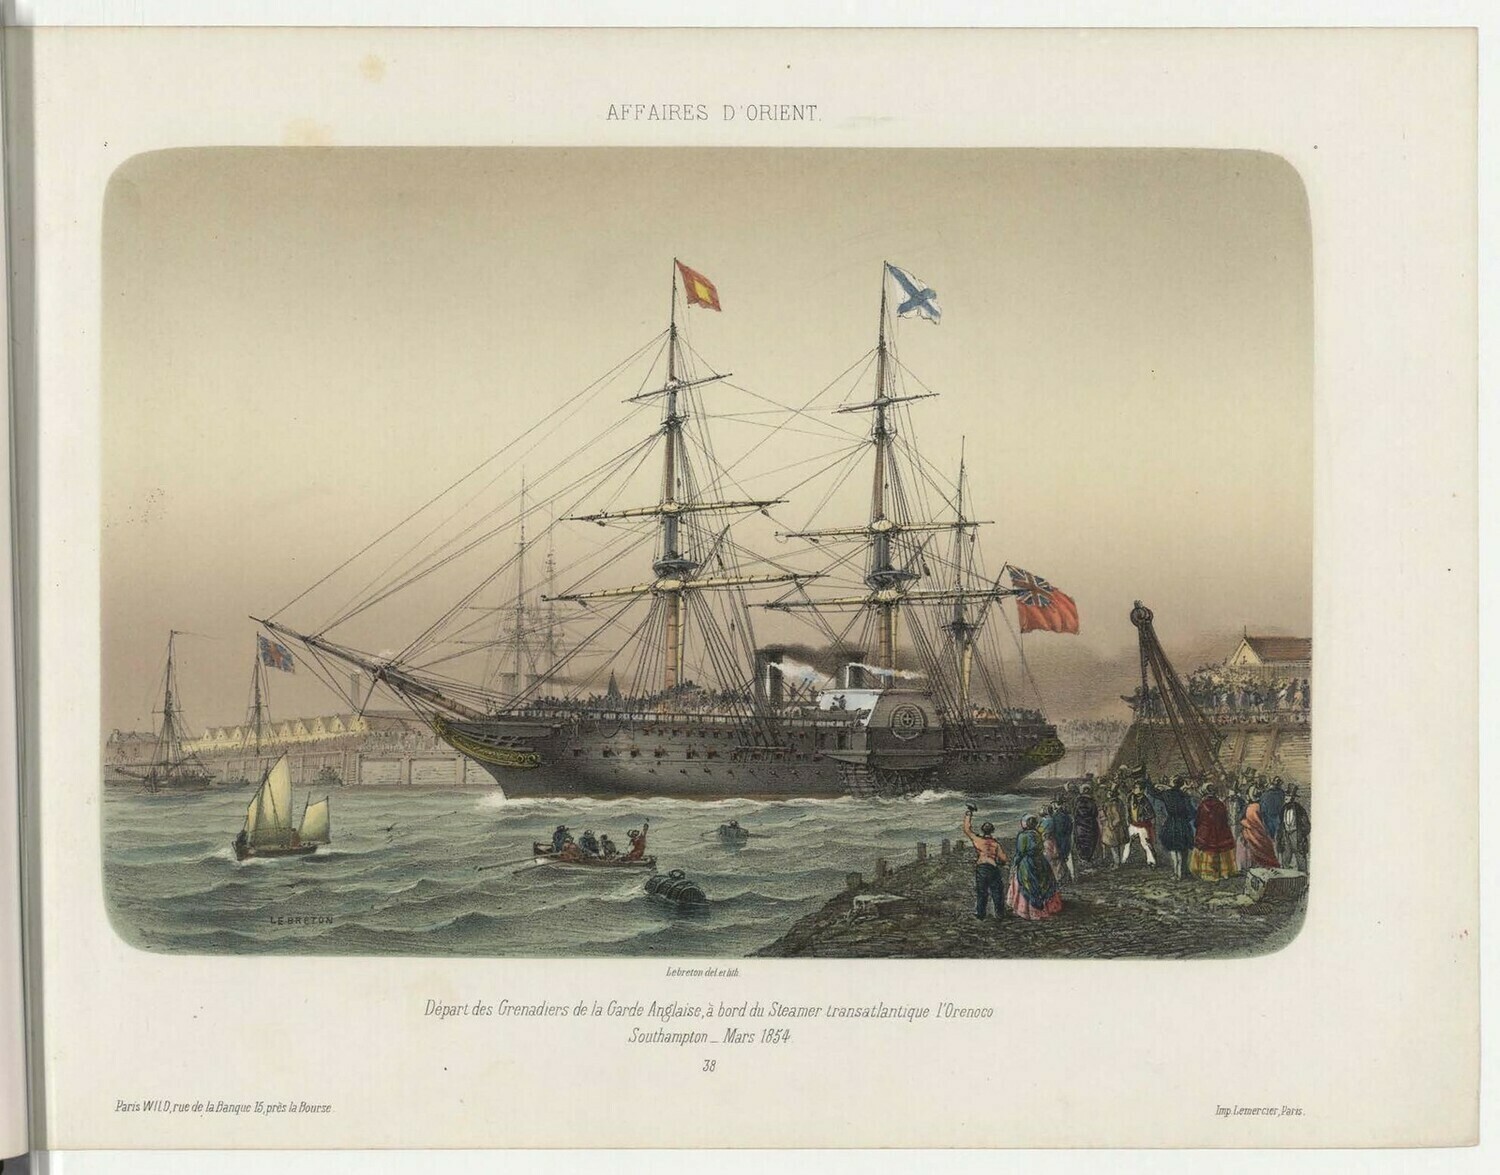 Отбытие гренадеров английской гвардии на борту трансатлантического парохода "Ориноко".